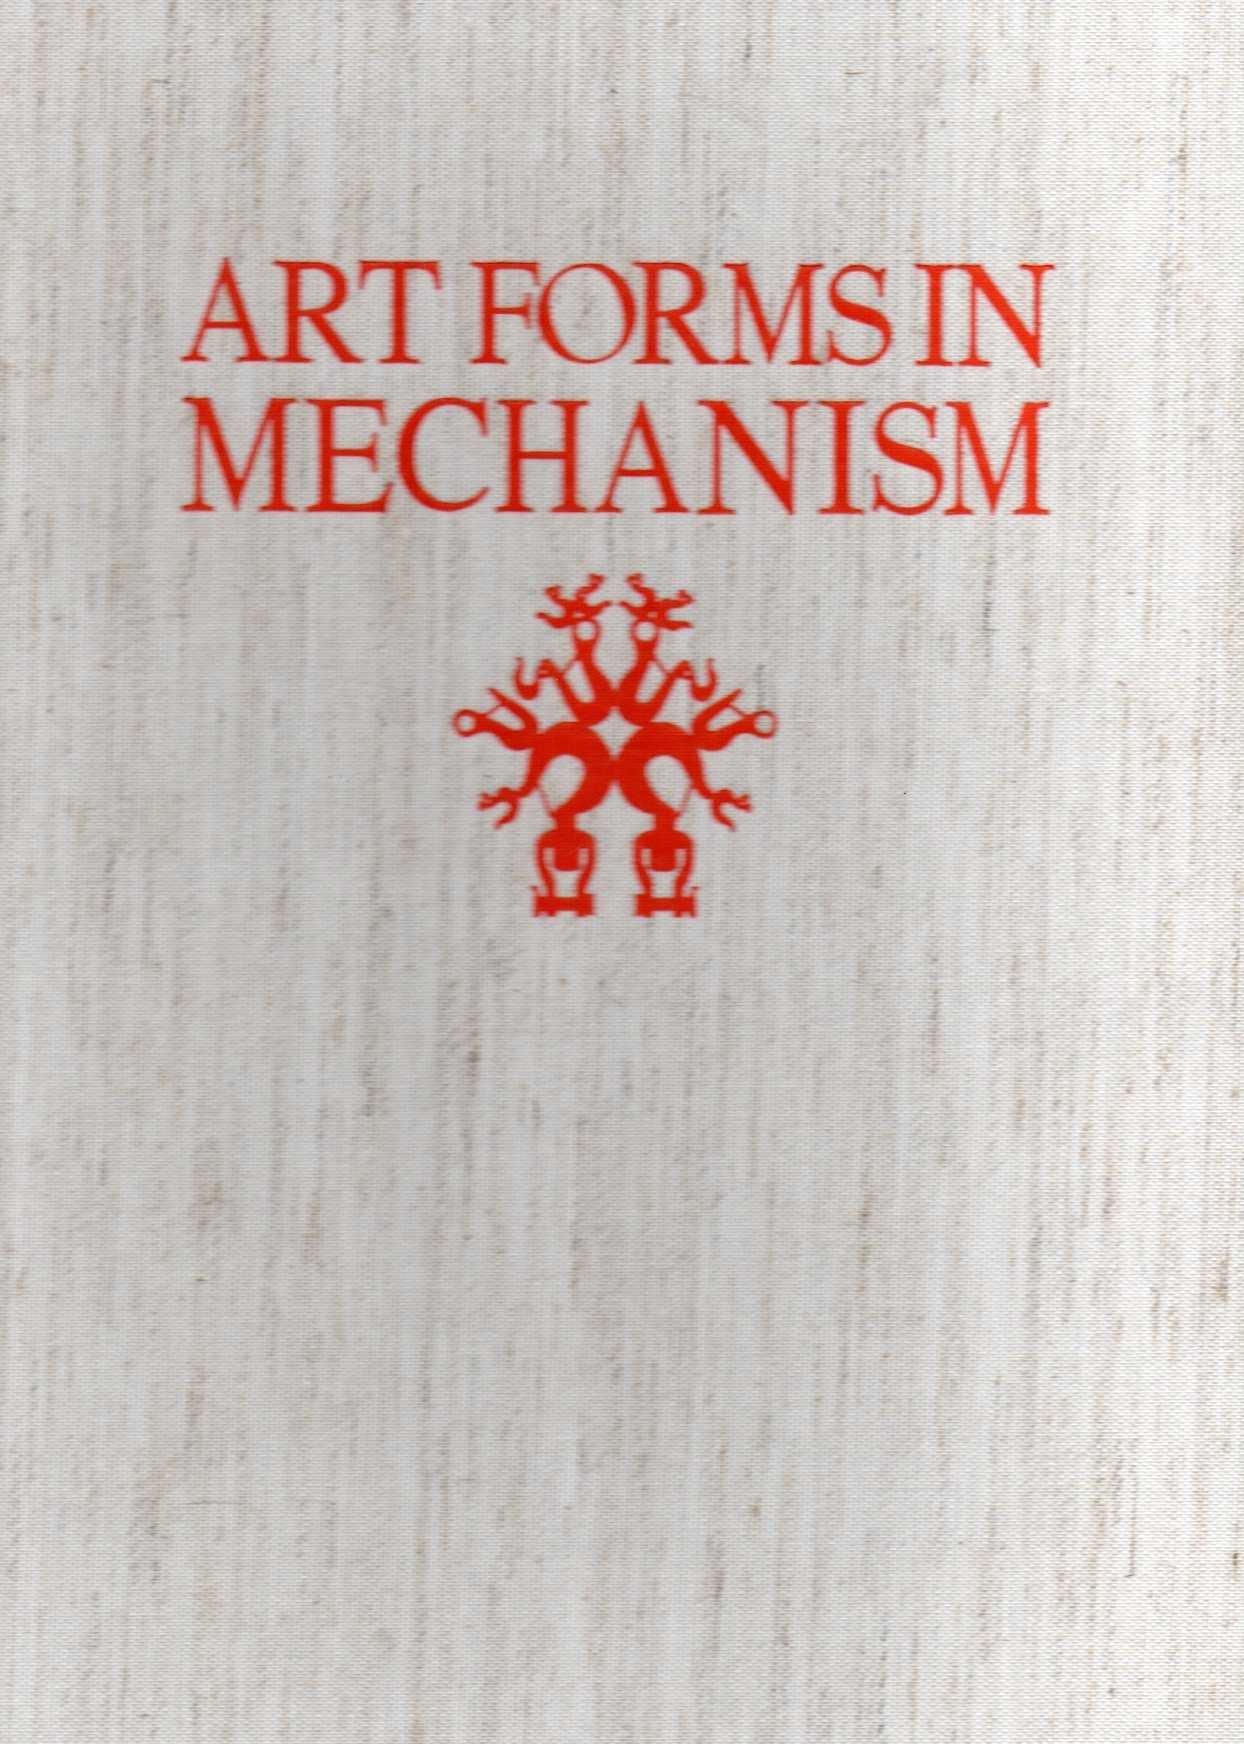 ART FORMS IN MECHANISM. 